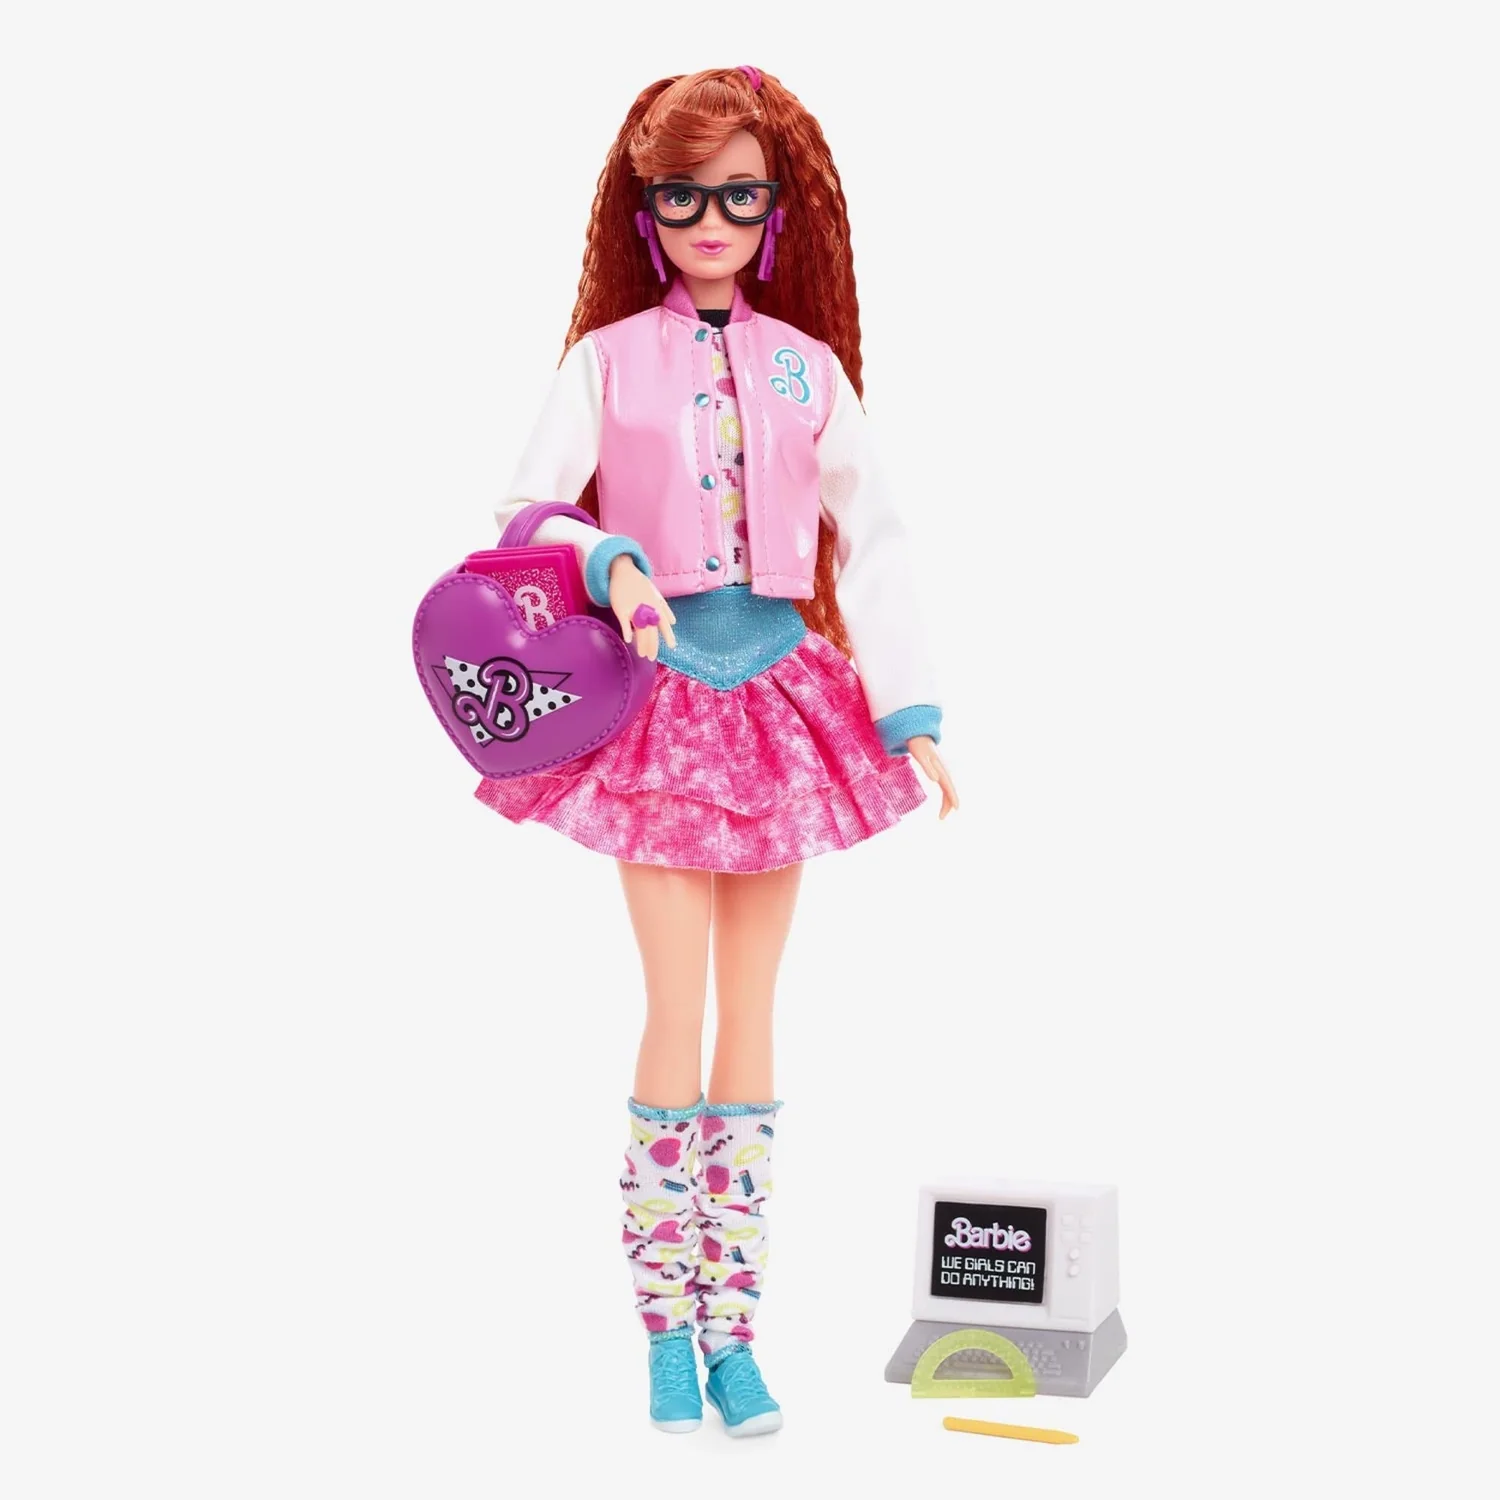 Кукла Barbie Rewind Школа в стиле 80-х годов HBY13 HBY13 - фото 1